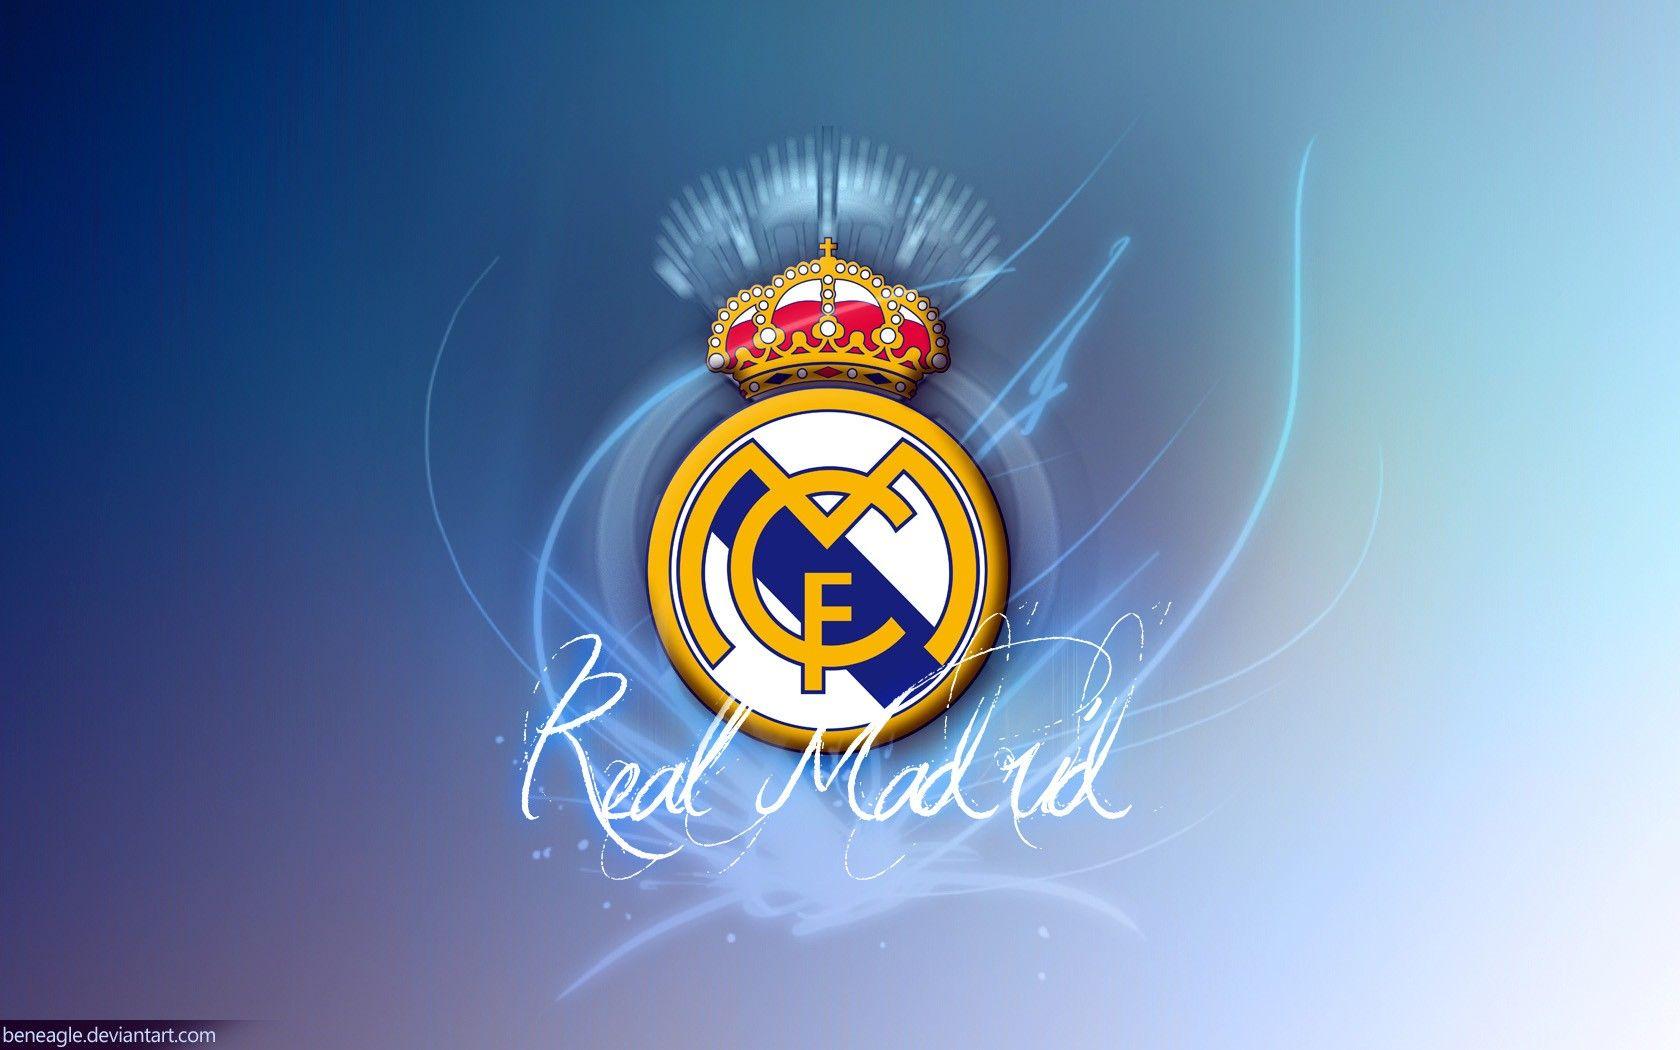 Khám phá sự đẹp mắt của đội bóng huyền thoại với hình nền logo Real Madrid đẹp. Một hình ảnh hiện diện trước mắt của tất cả những người hâm mộ hùng mạnh và lớn lao của Real Madrid. Hãy cùng đồng hành và thể hiện tình yêu với Real Madrid một cách tuyệt vời trên màn hình của bạn.